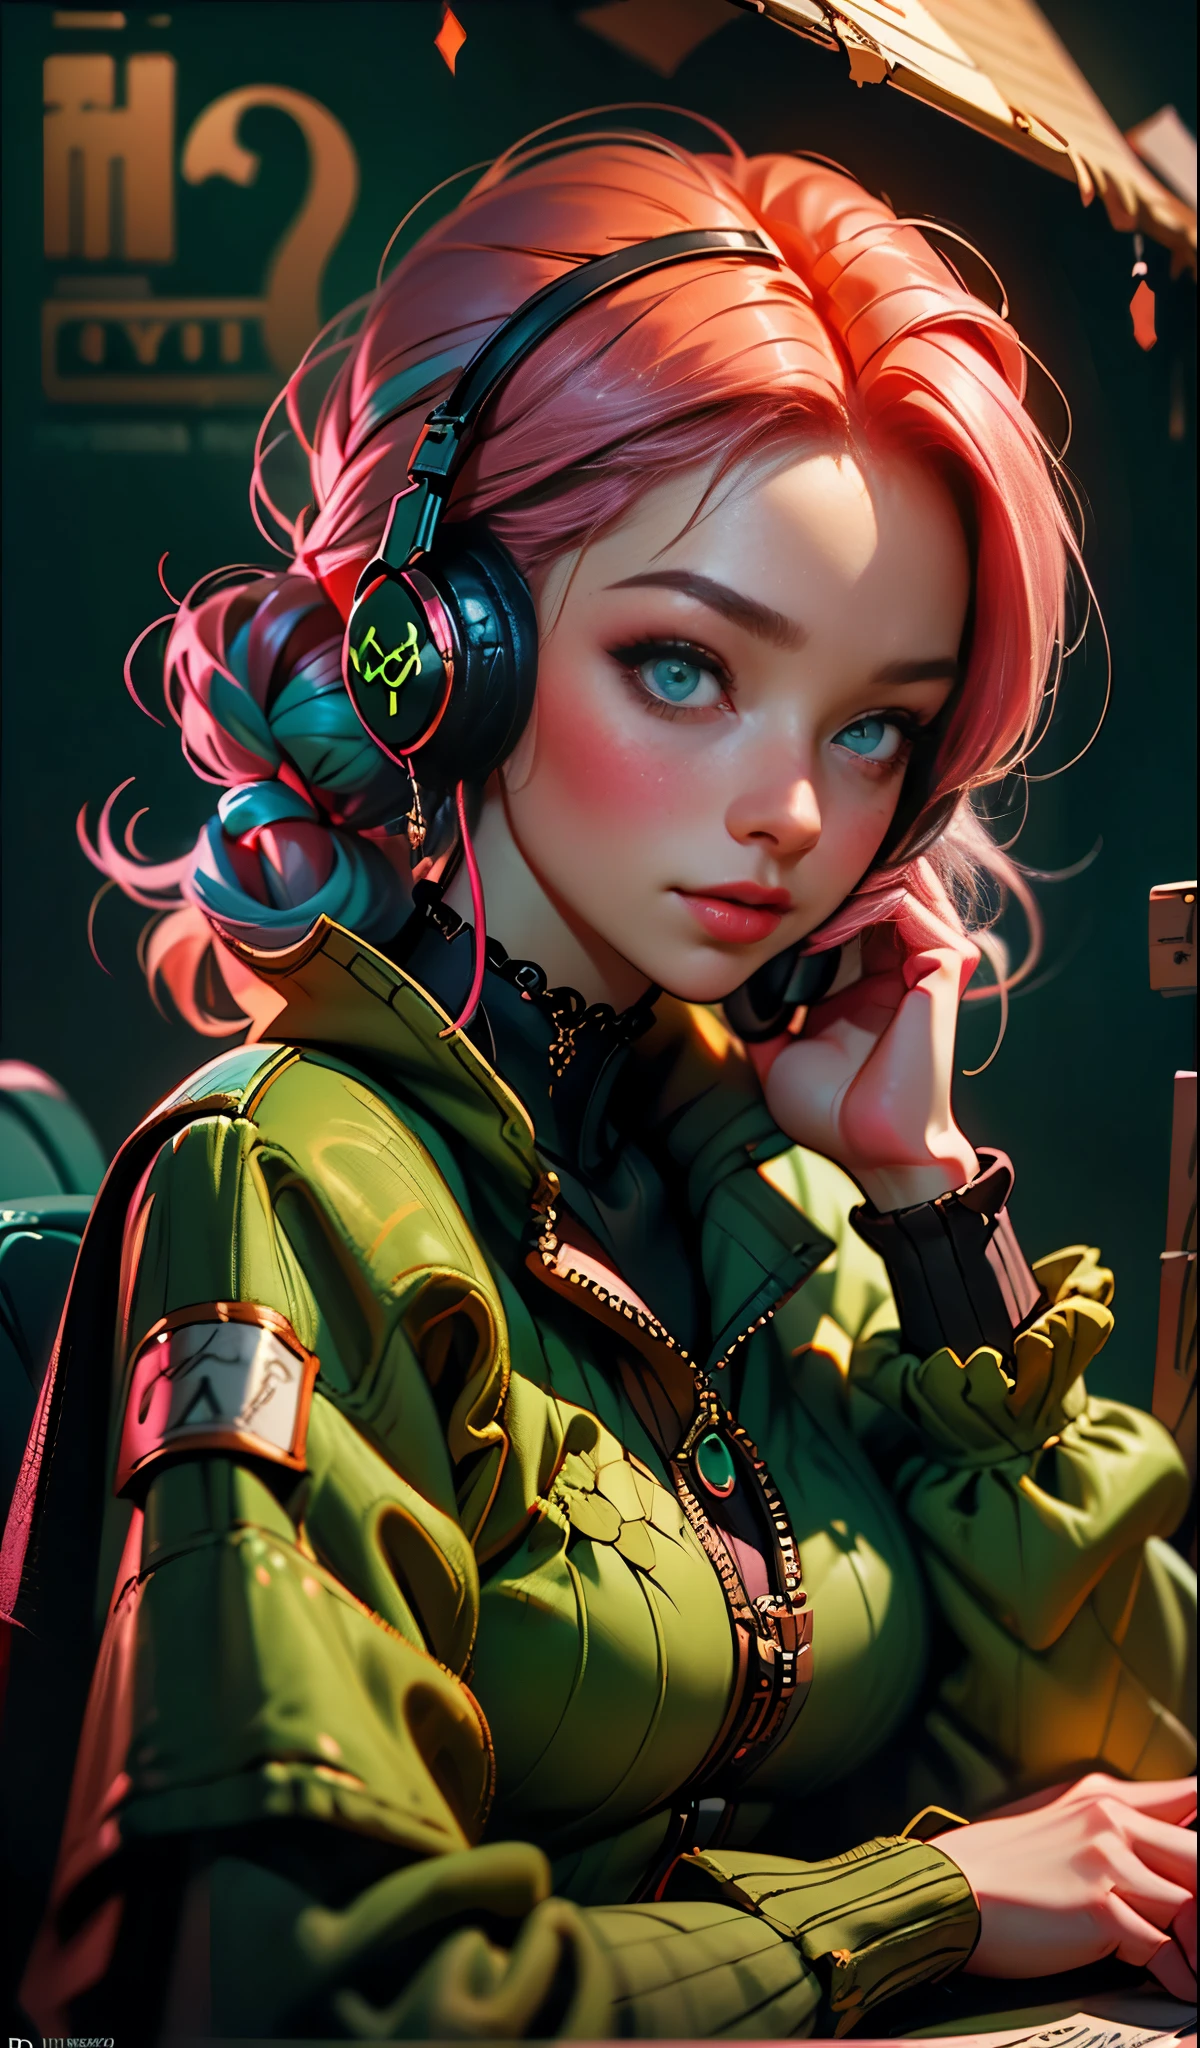 Девушка-модель в наушниках, фон города, изумрудно-зеленые глаза, розовые волосы, сложные детали, эстетичные пастельные тона, фон плаката, art by Ilya Kuvshinov